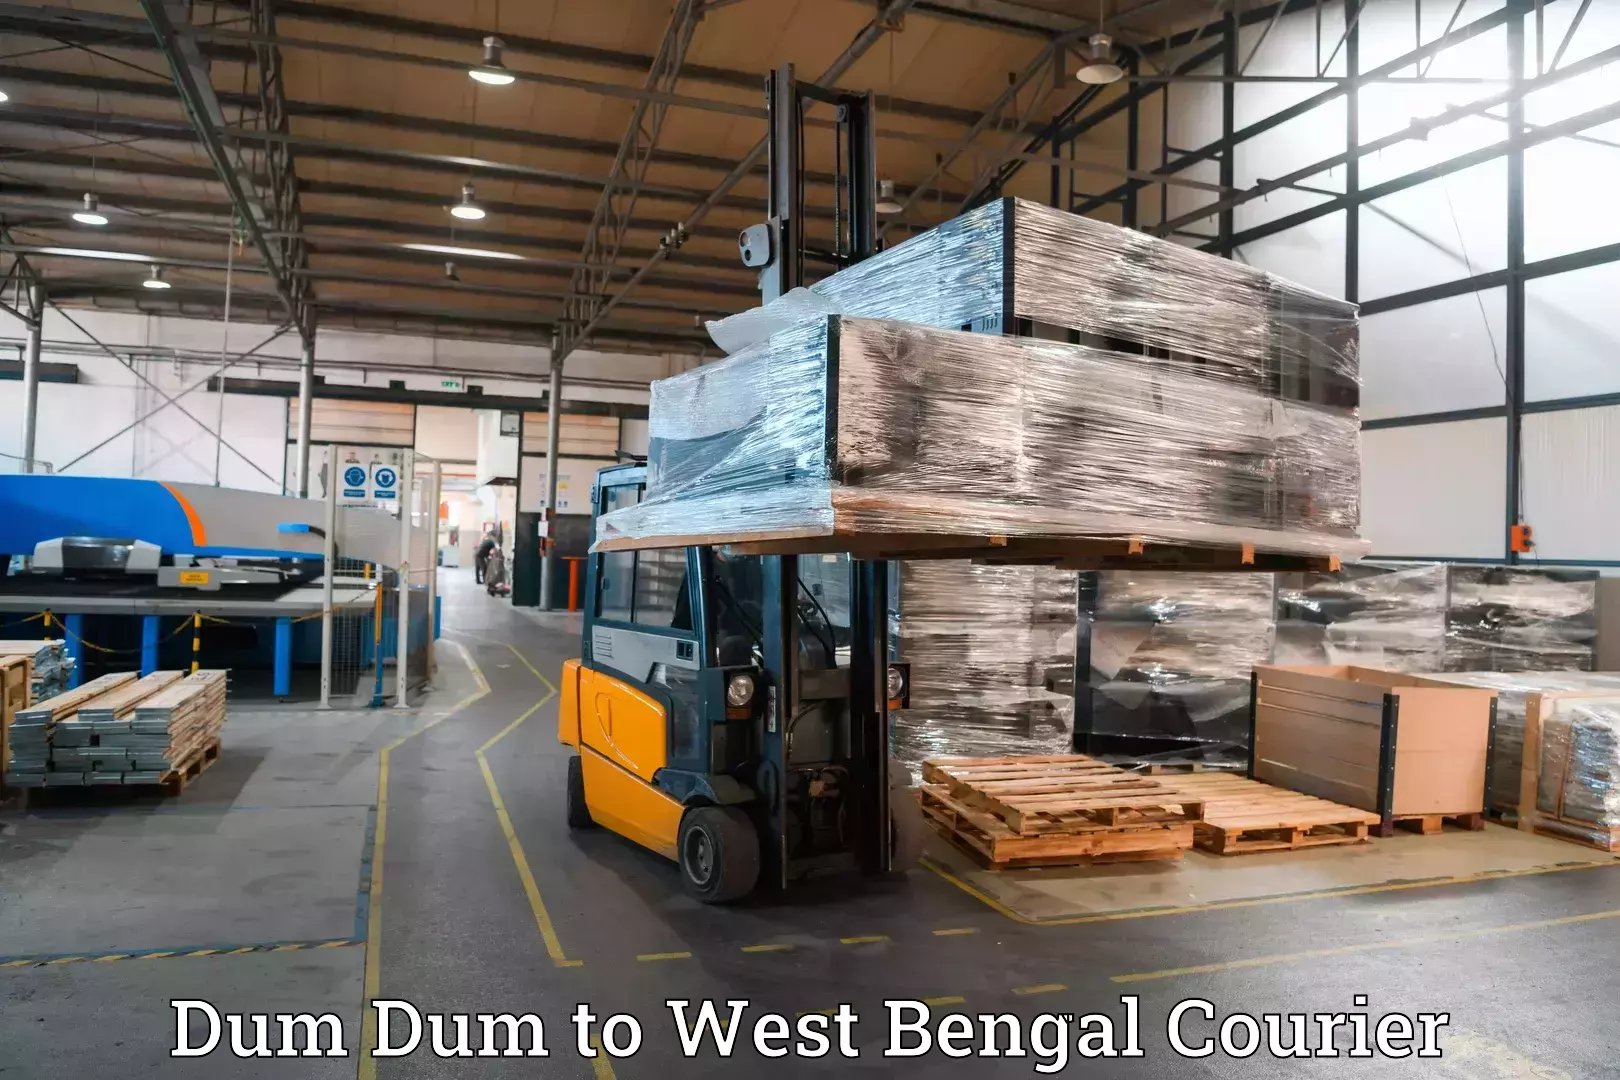 Baggage transport estimate Dum Dum to Purba Medinipur